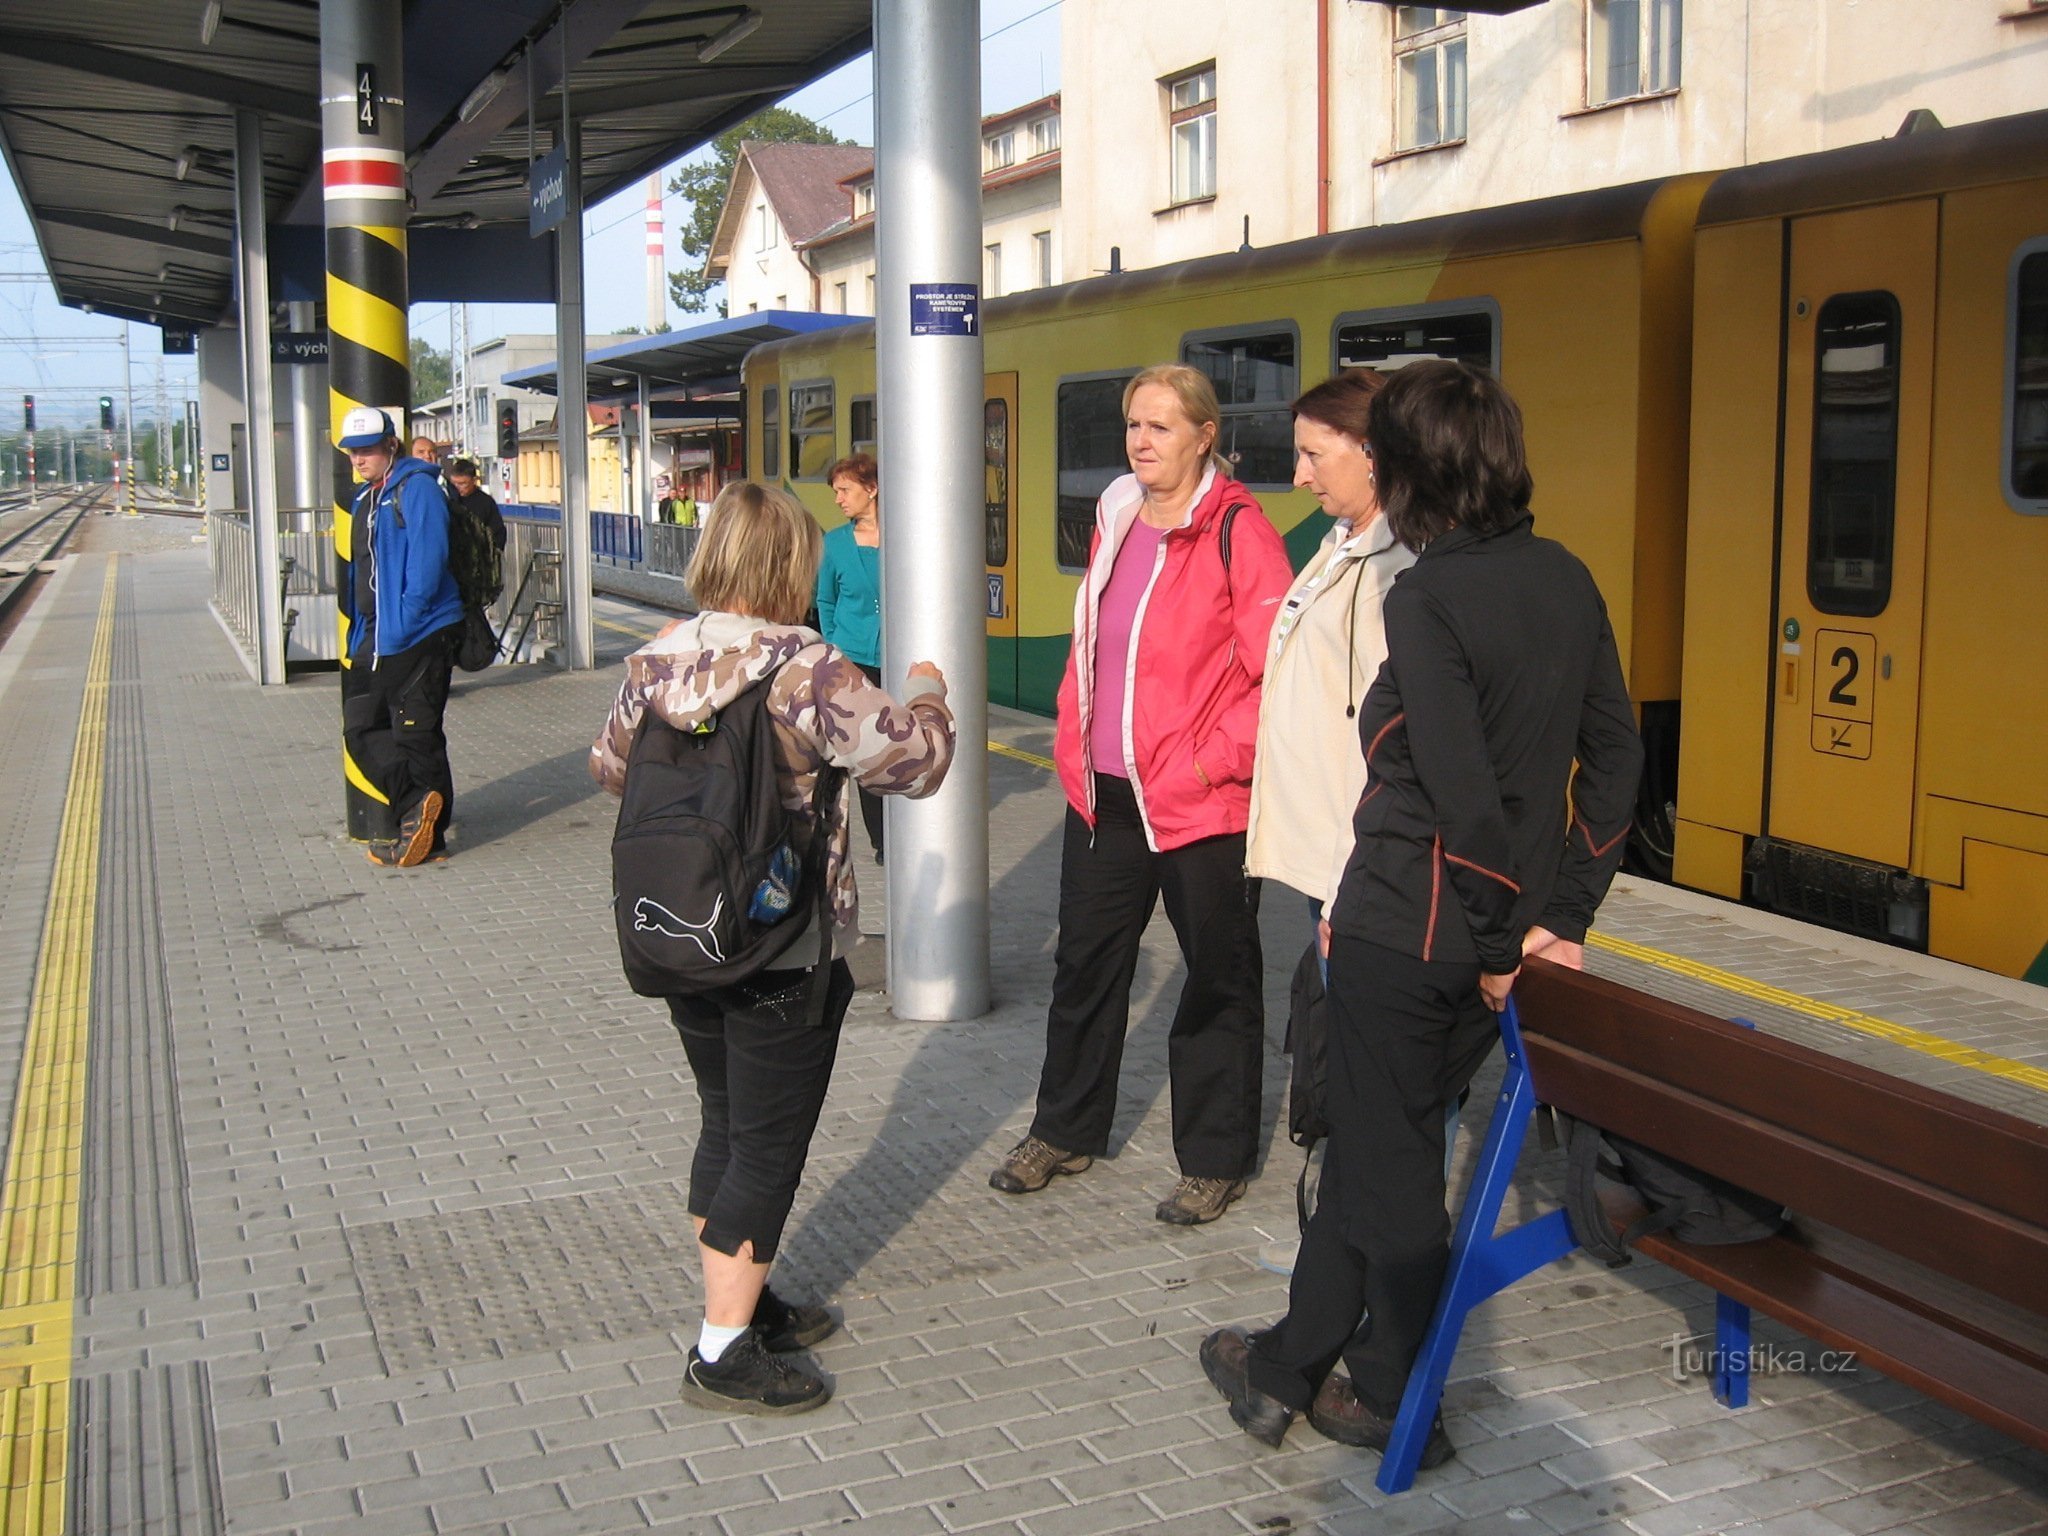 Op het station van Strakonice